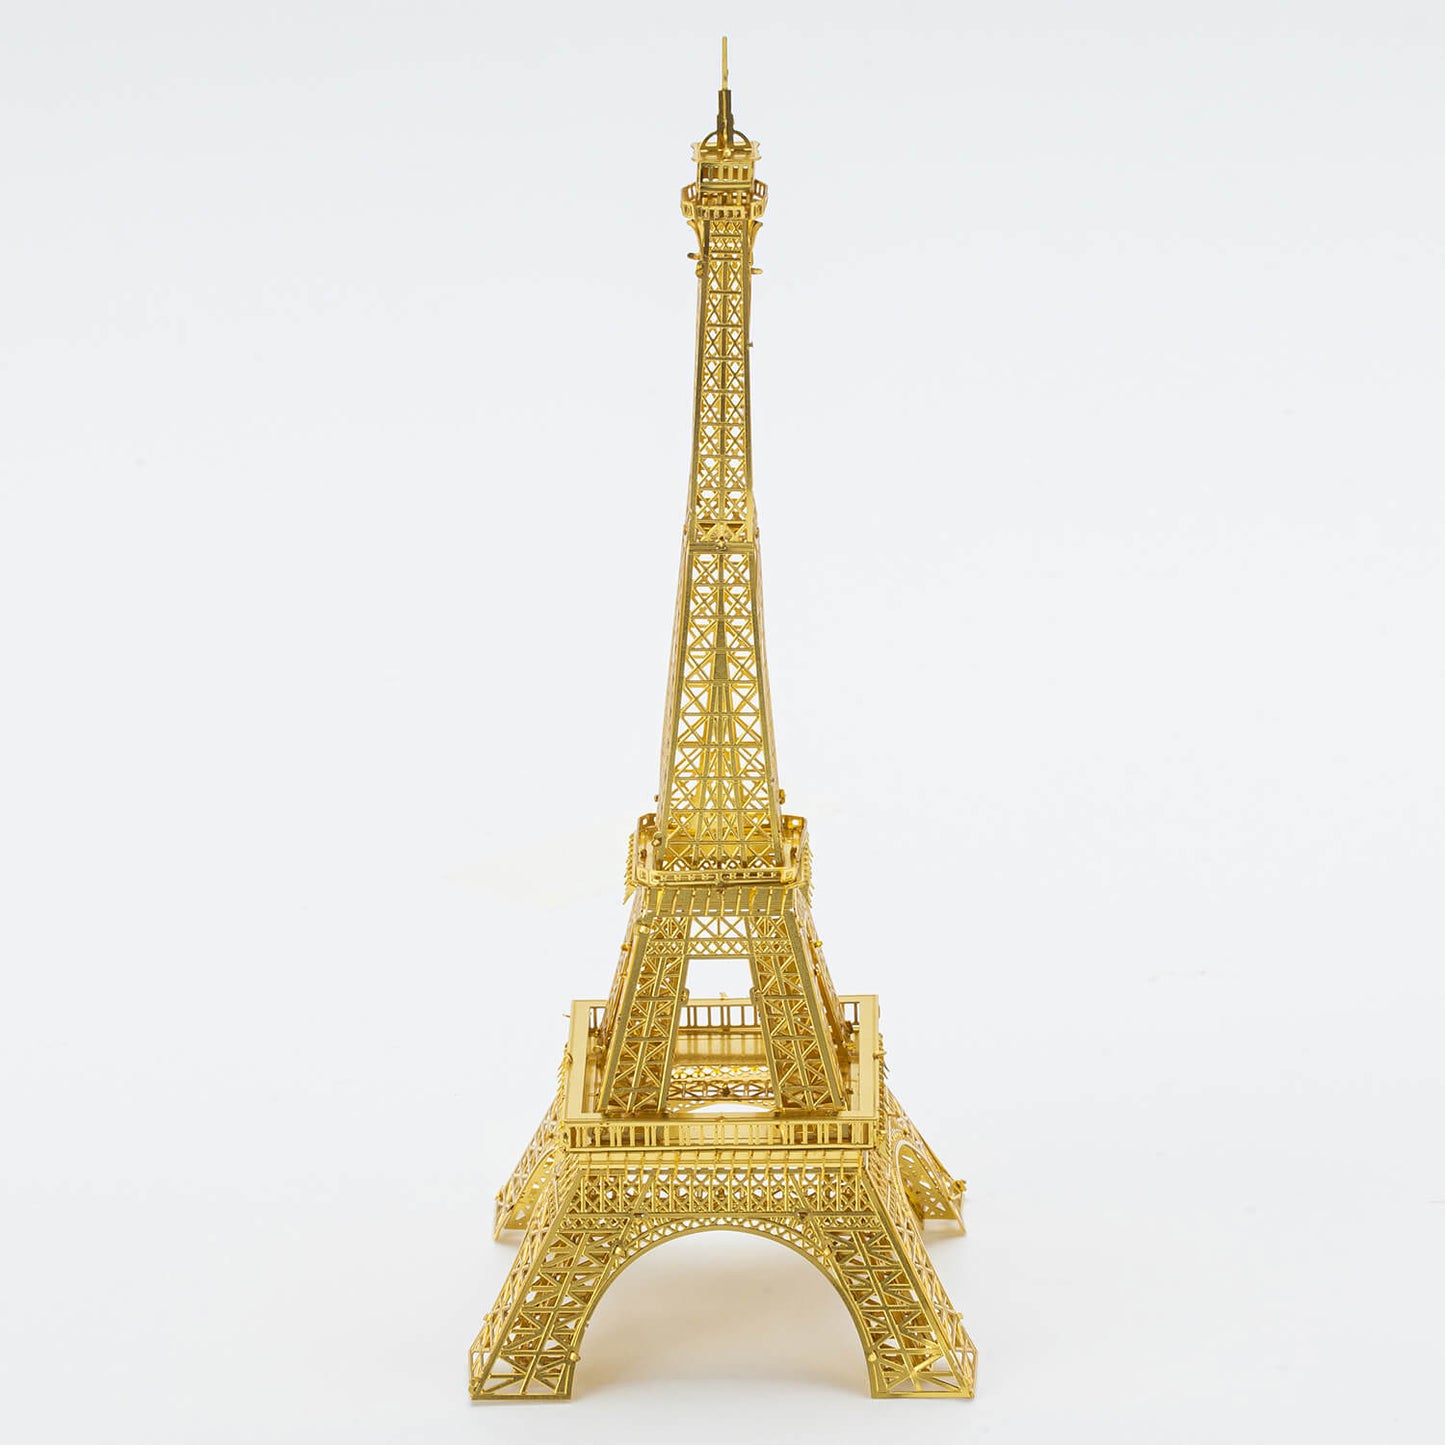 Eiffel torni